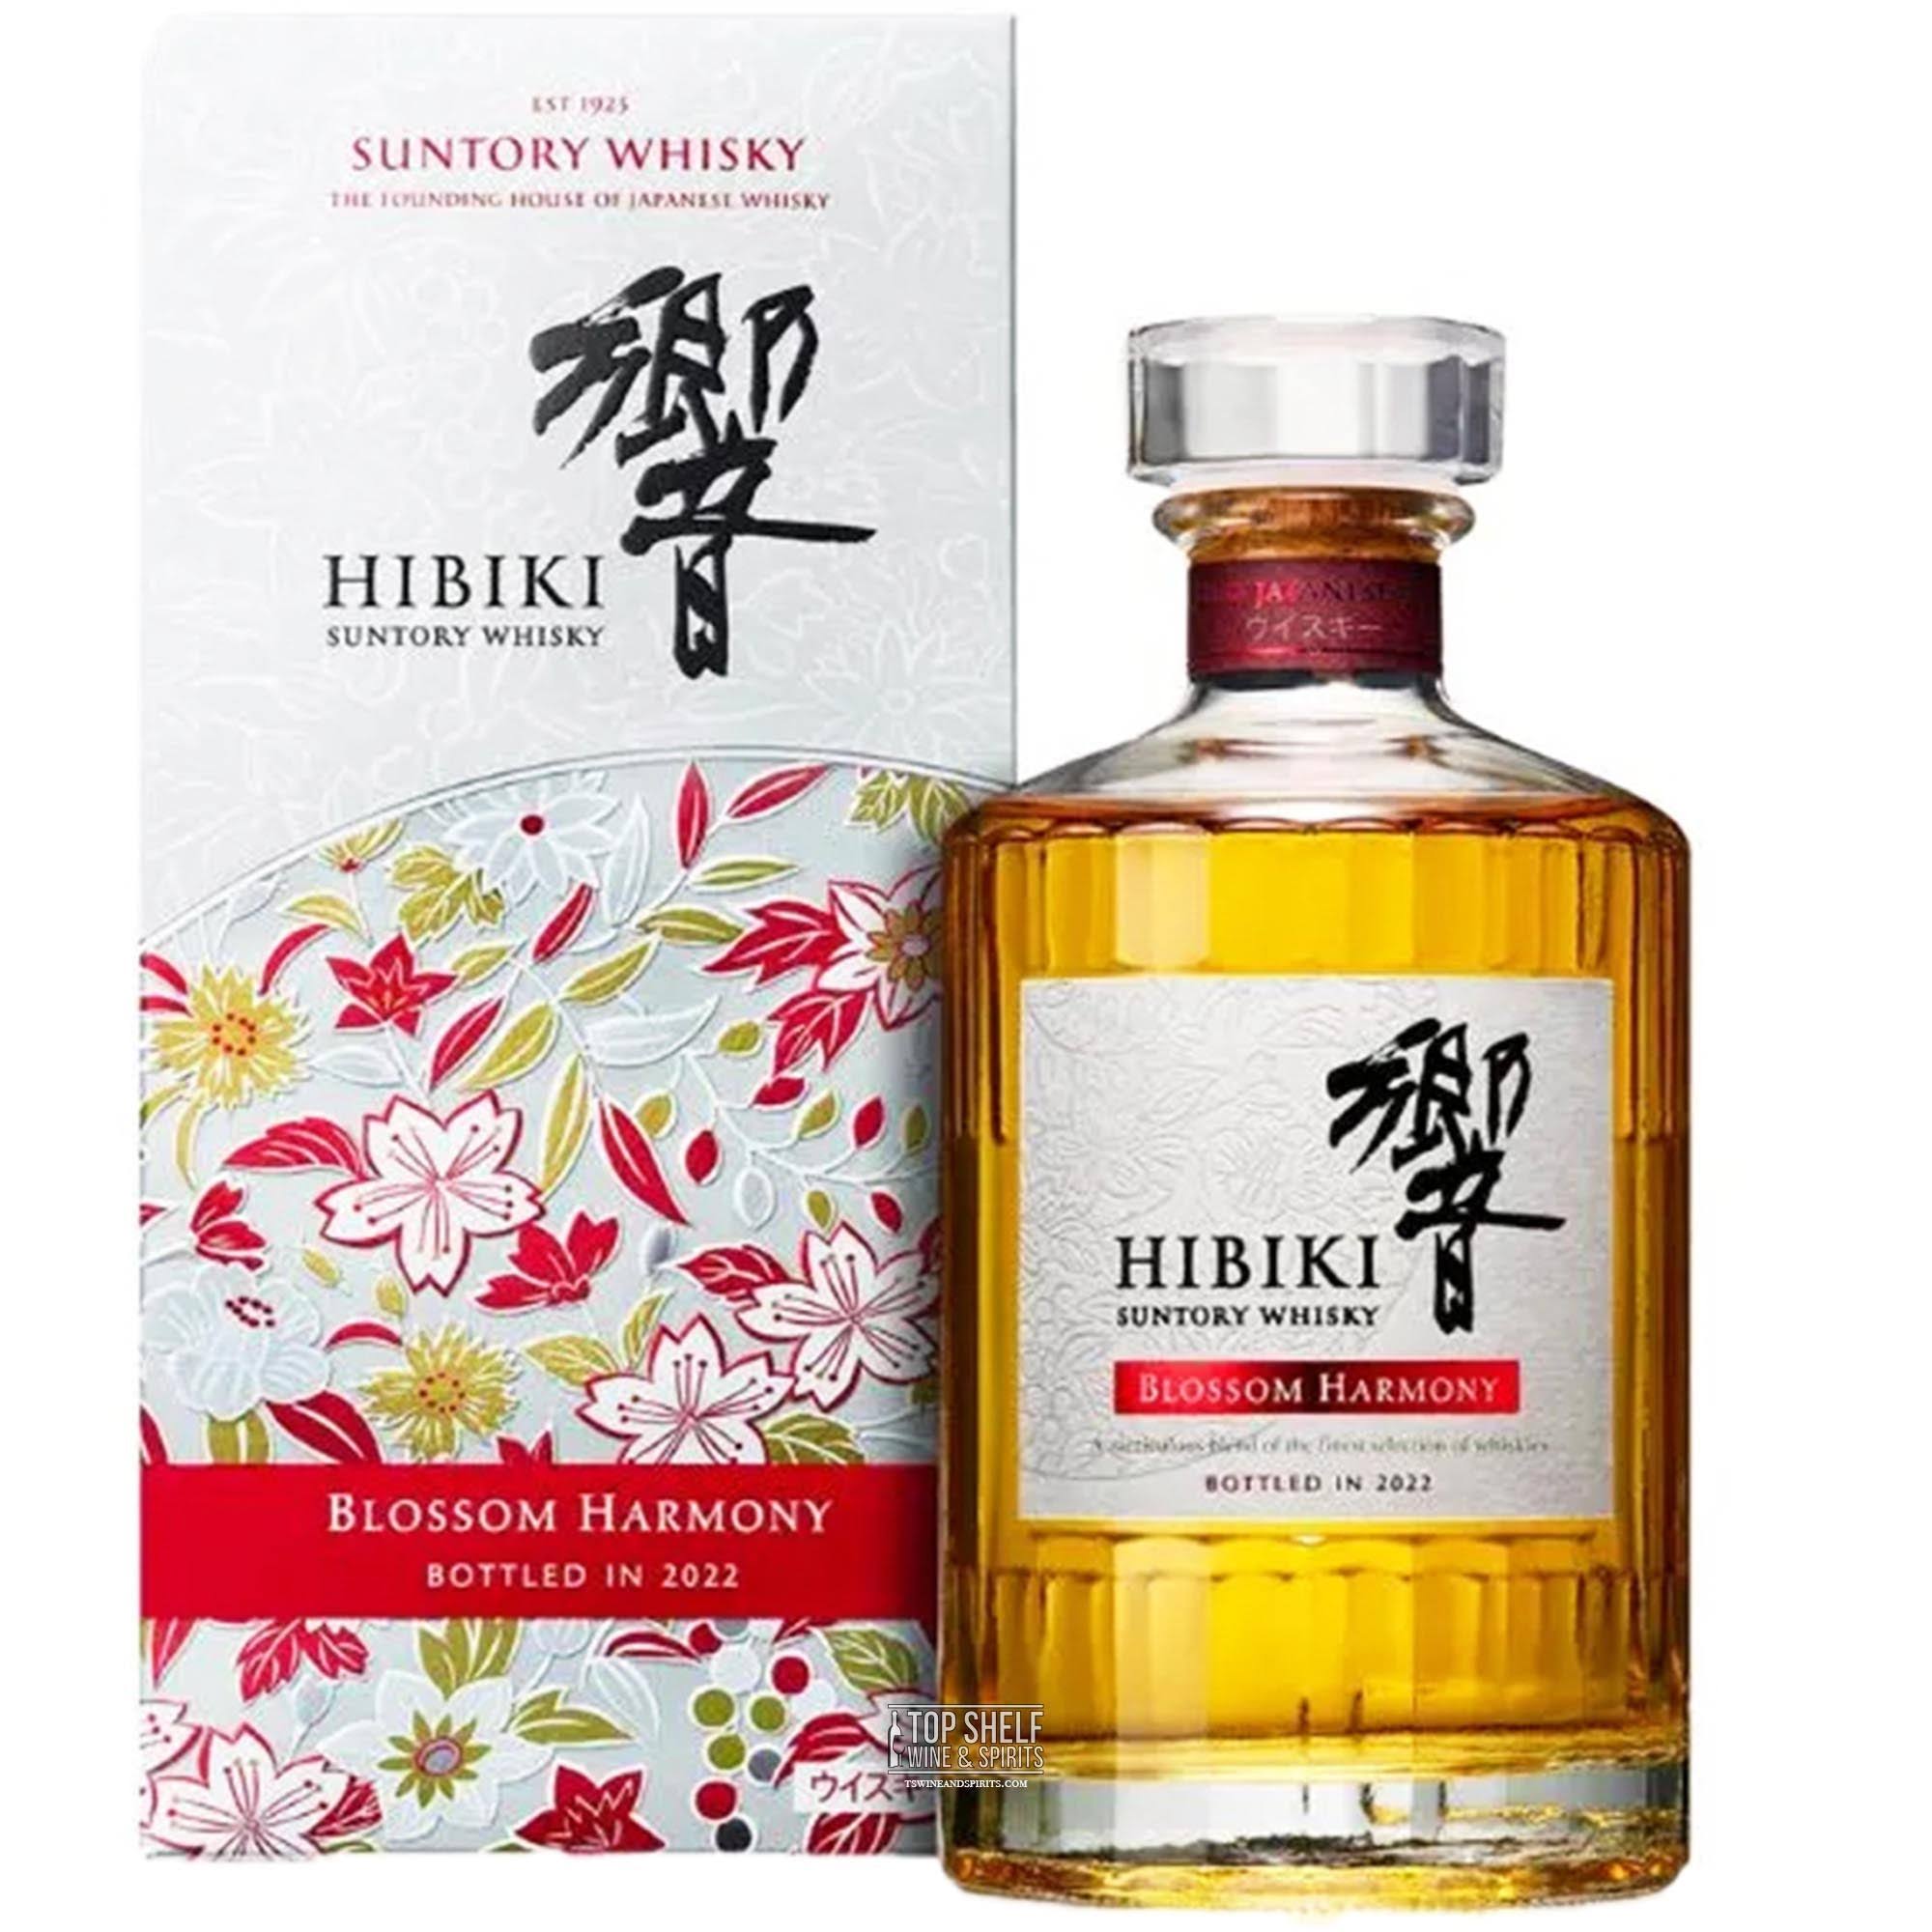 Hibiki Blossom Harmony Whisky 2022